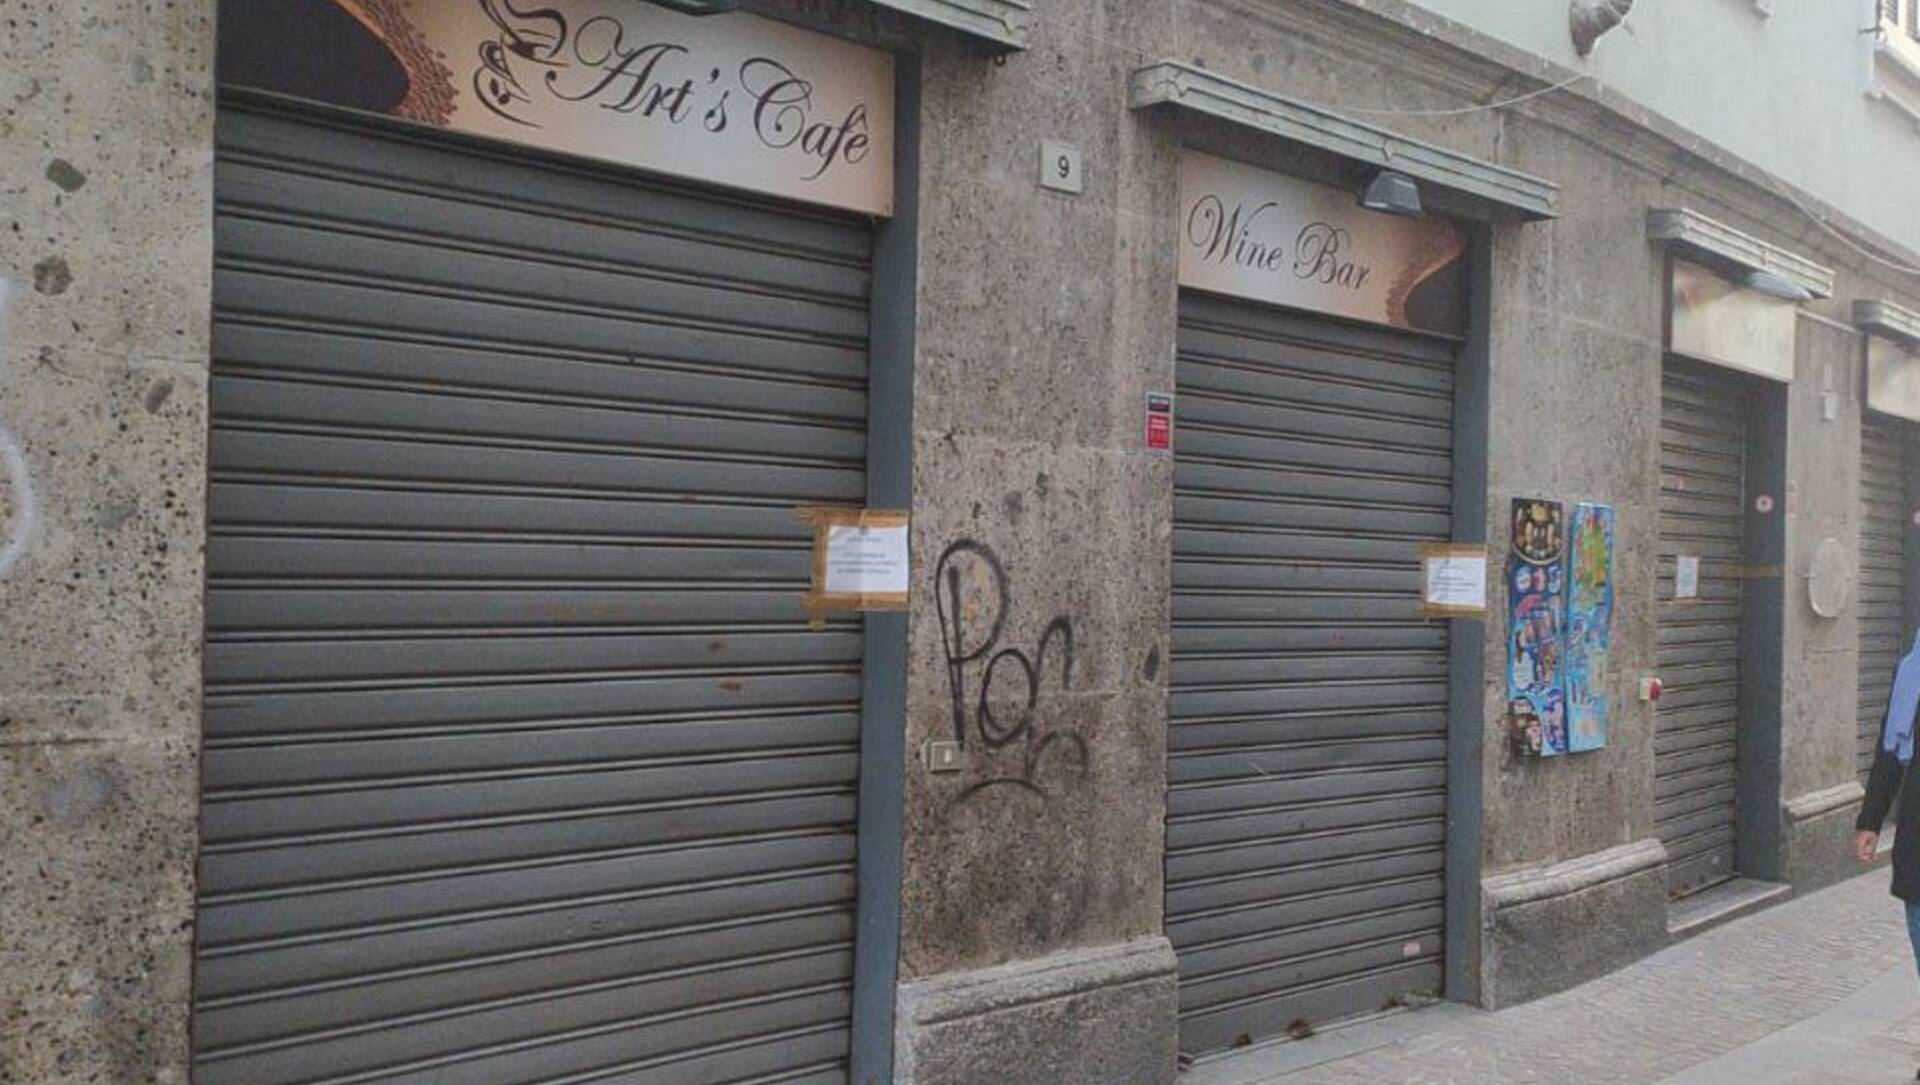 Ieri a Saronno: la questura chiude bar per 30 giorni, grave incidente in A8, “Palestina libera” in via Alliata